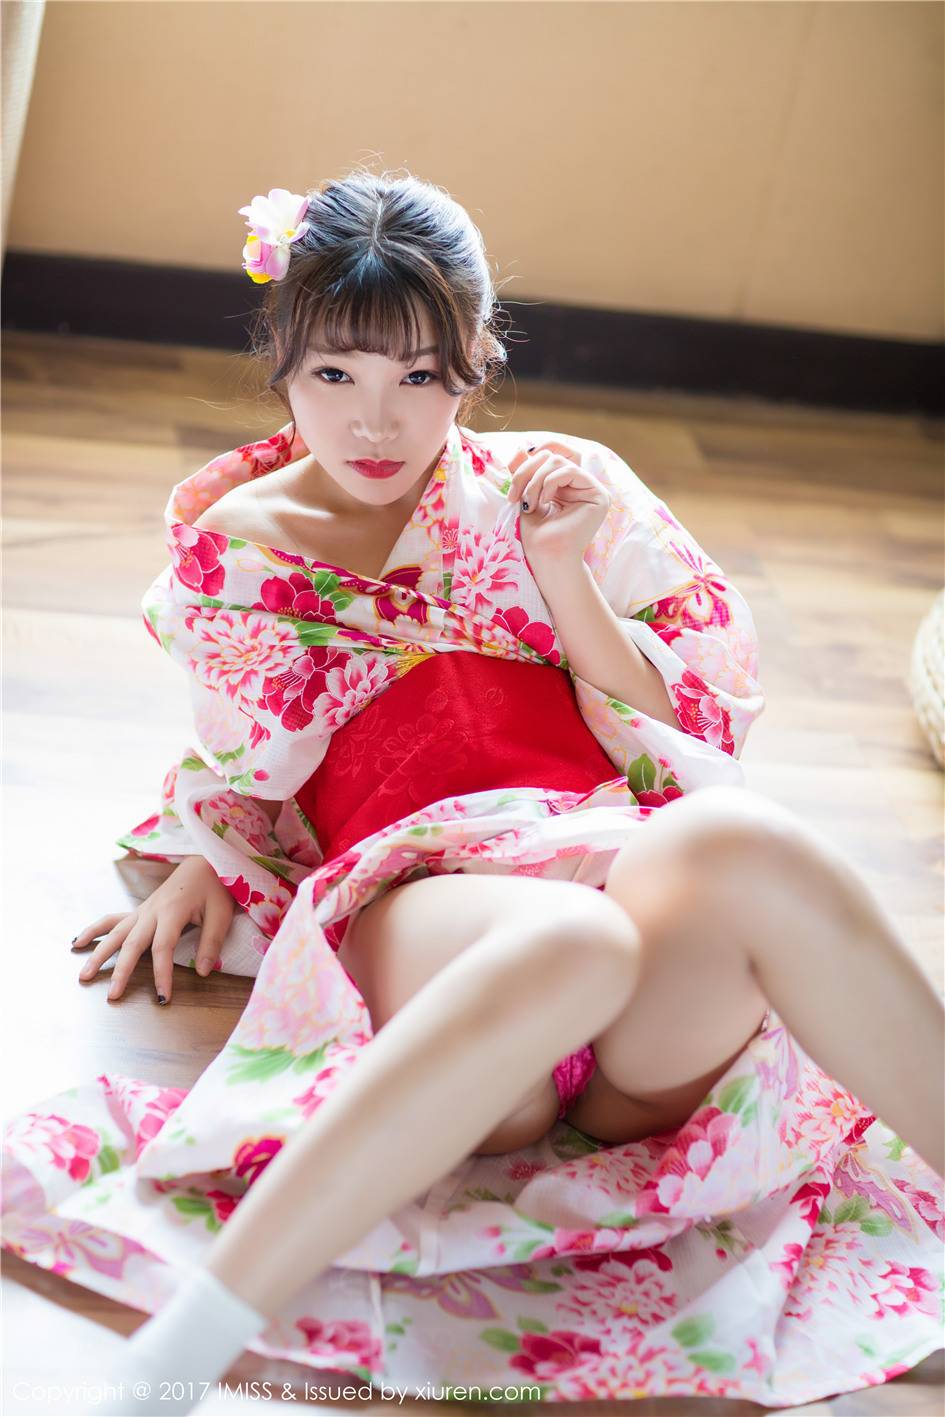 樱花和服美女芝芝Boσty日系高清写真(21张)